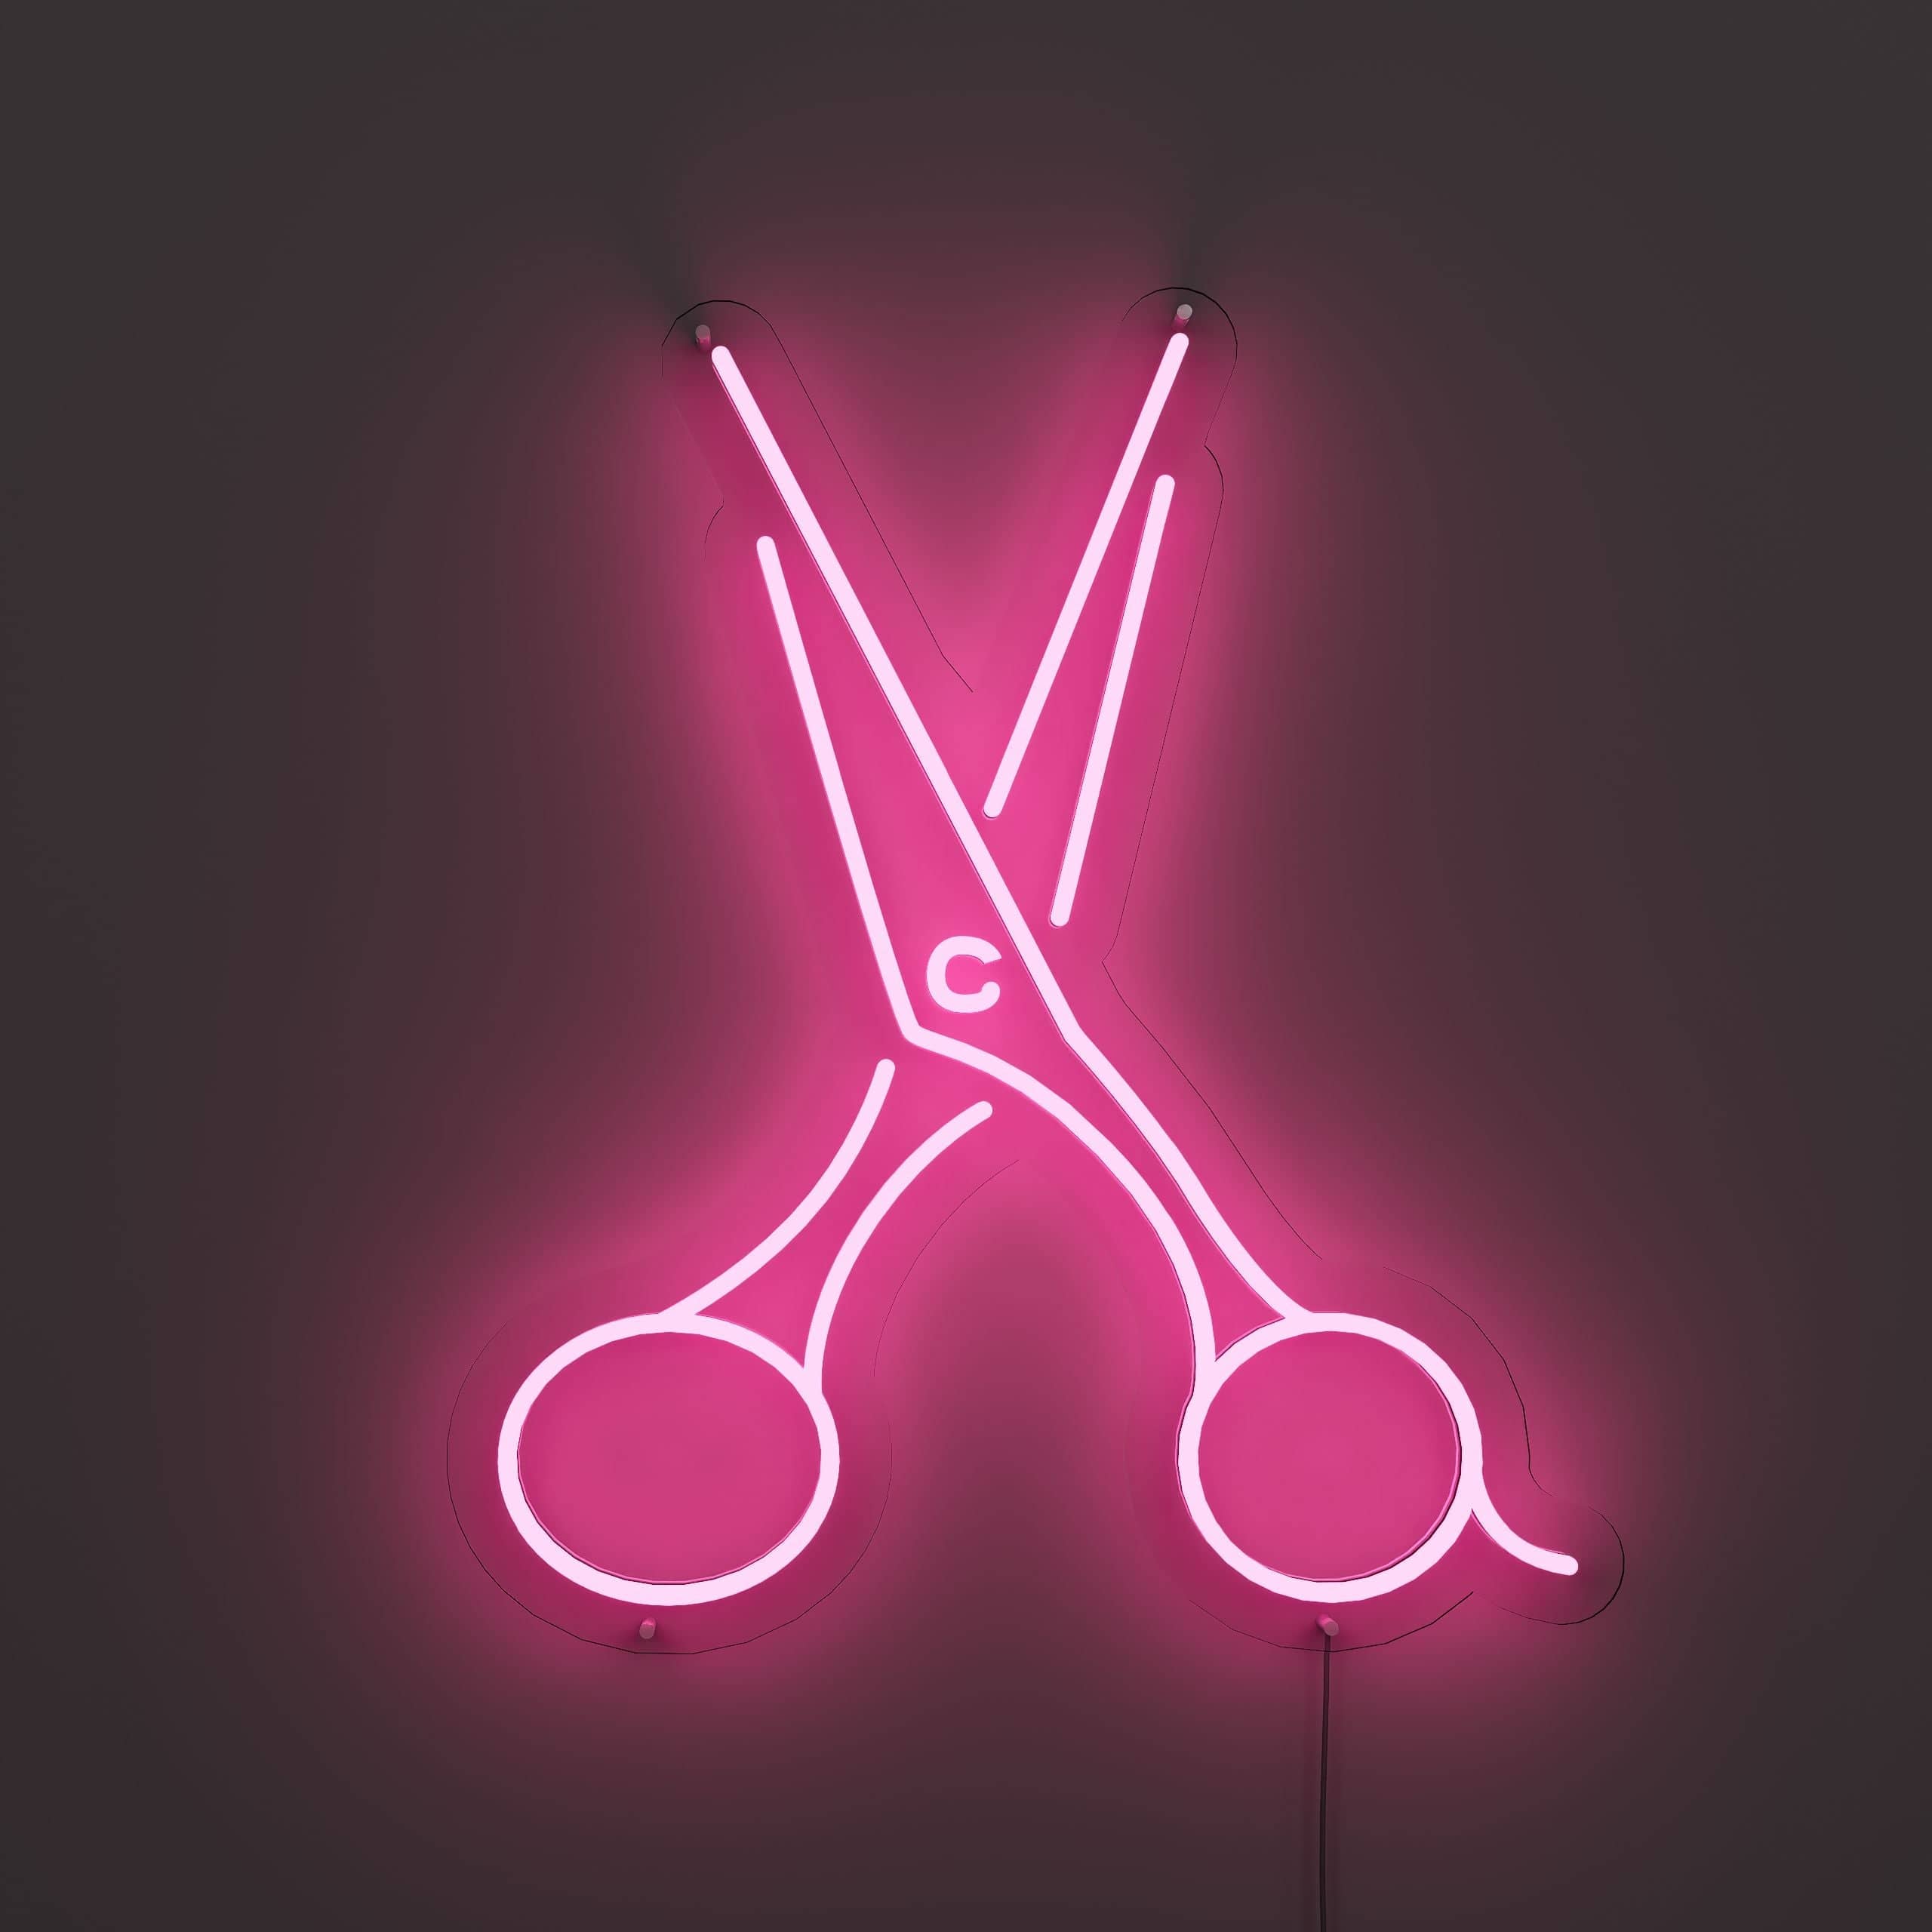 sleek-scissor-creations-neon-sign-lite